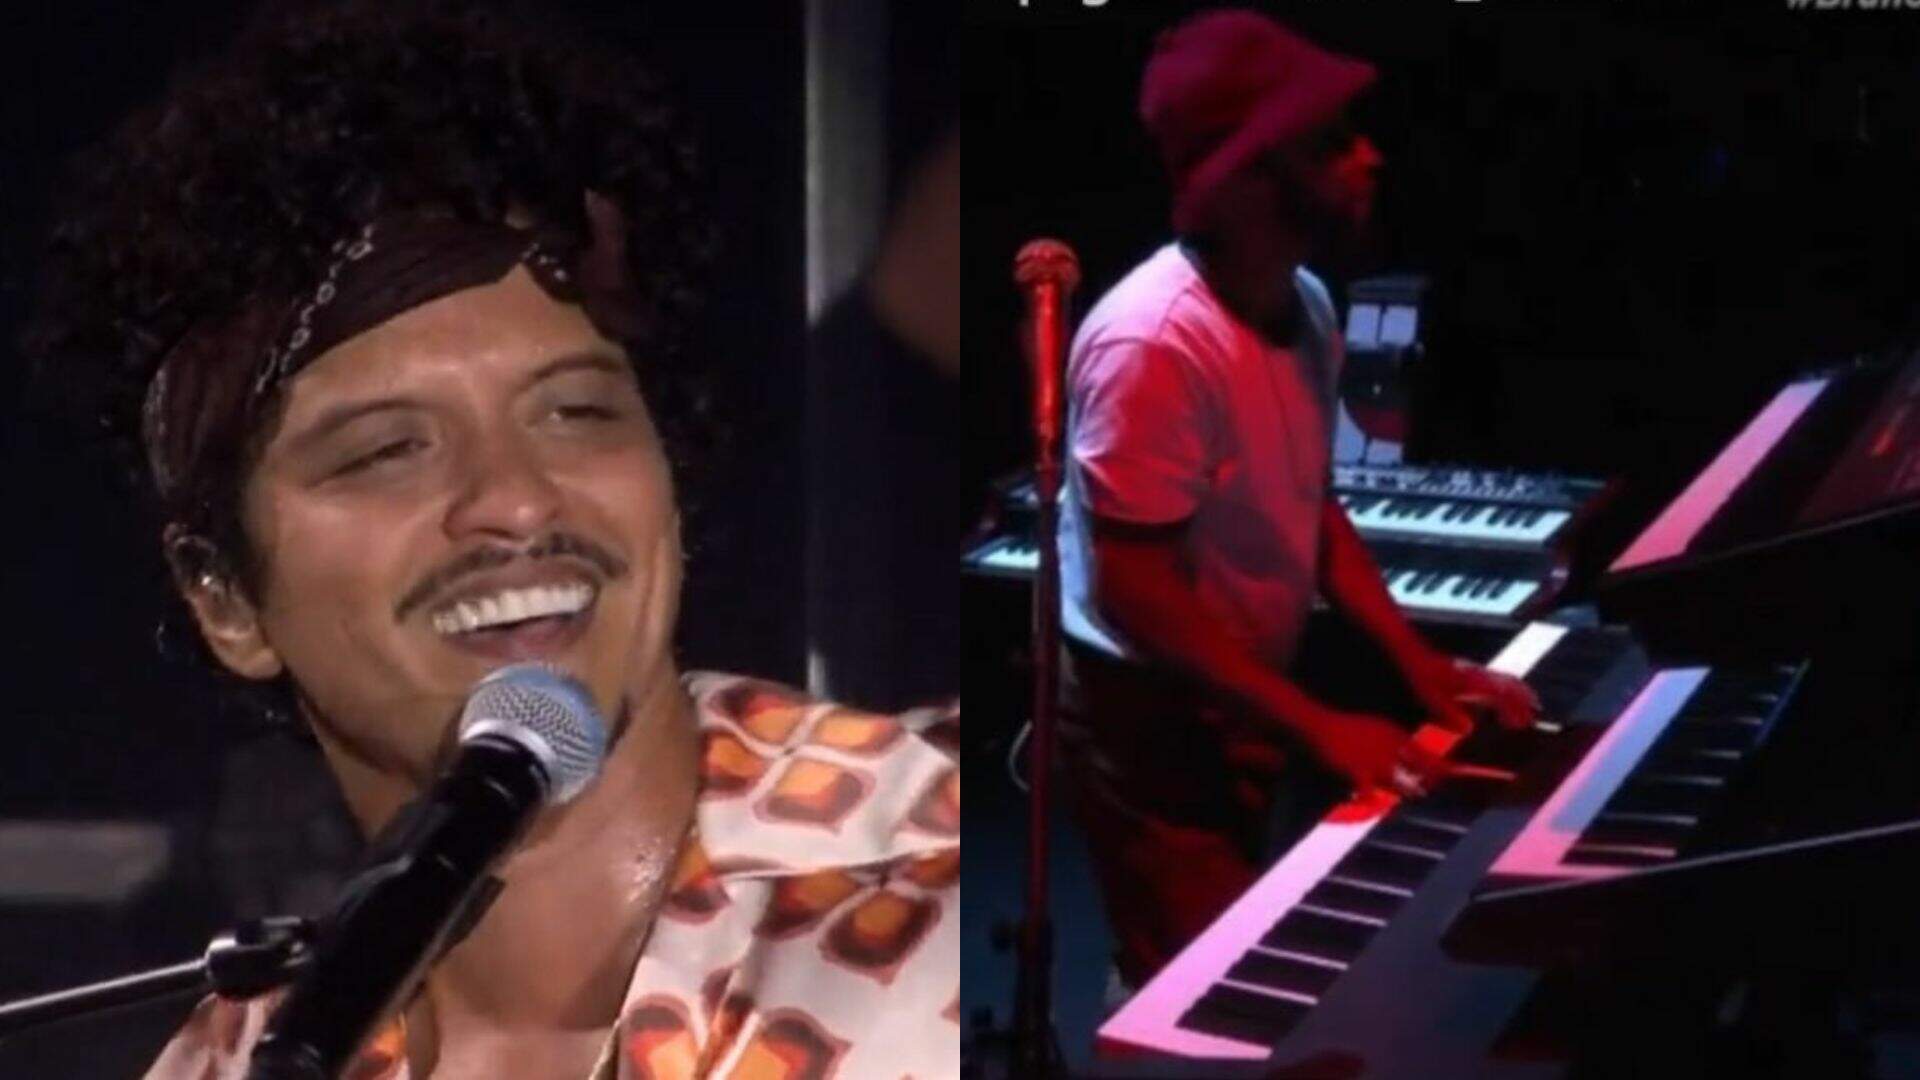 Quase brasileiro! Banda de Bruno Mars coloca público pra cantar hit sertanejo no meio do The Town - Metropolitana FM